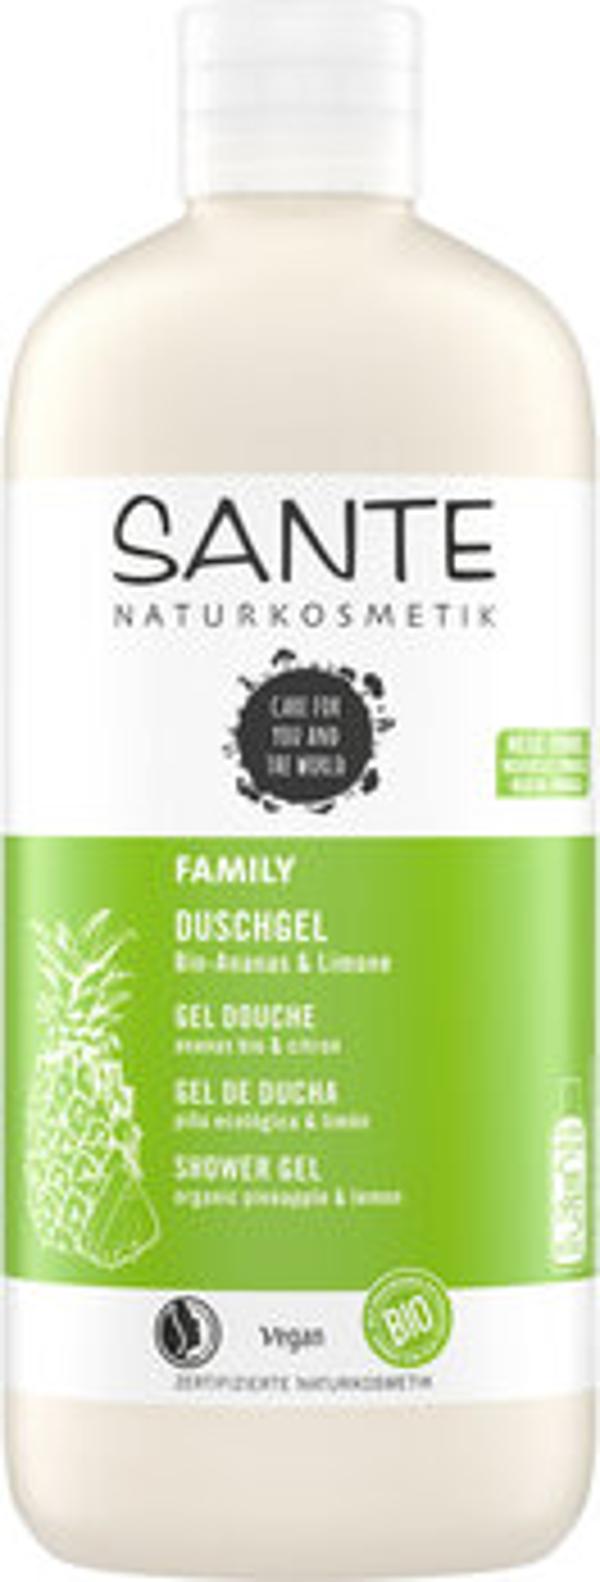 Produktfoto zu FAMILY Duschgel Ananas & Limone 500ml